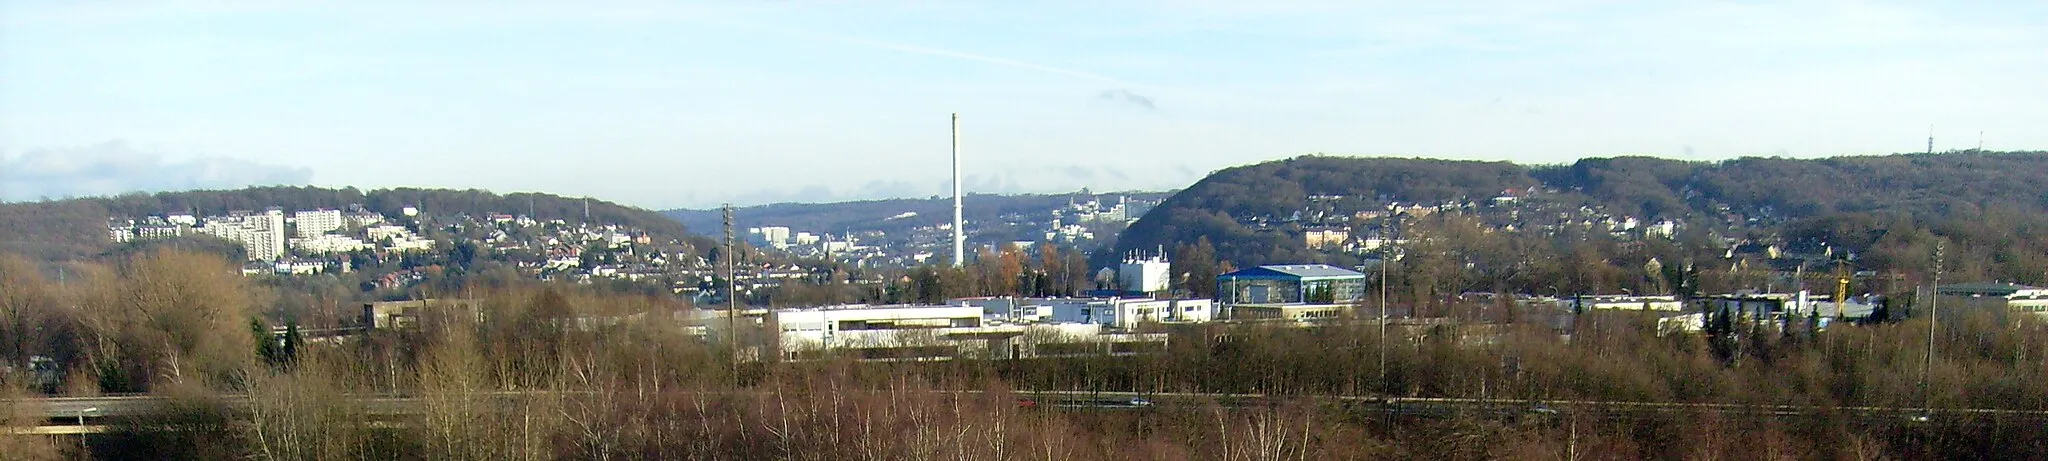 Photo showing: Die engste Stelle des Tales in der Großstadt Wuppertal befindet sich zwischen dem Nützenberg (links) und dem Kiesberg (rechts). An dieser Talenge steht das Heizkraftwerk Elberfeld an der Kabelstraße. Der hohe Schornstein überragt beide Berge.